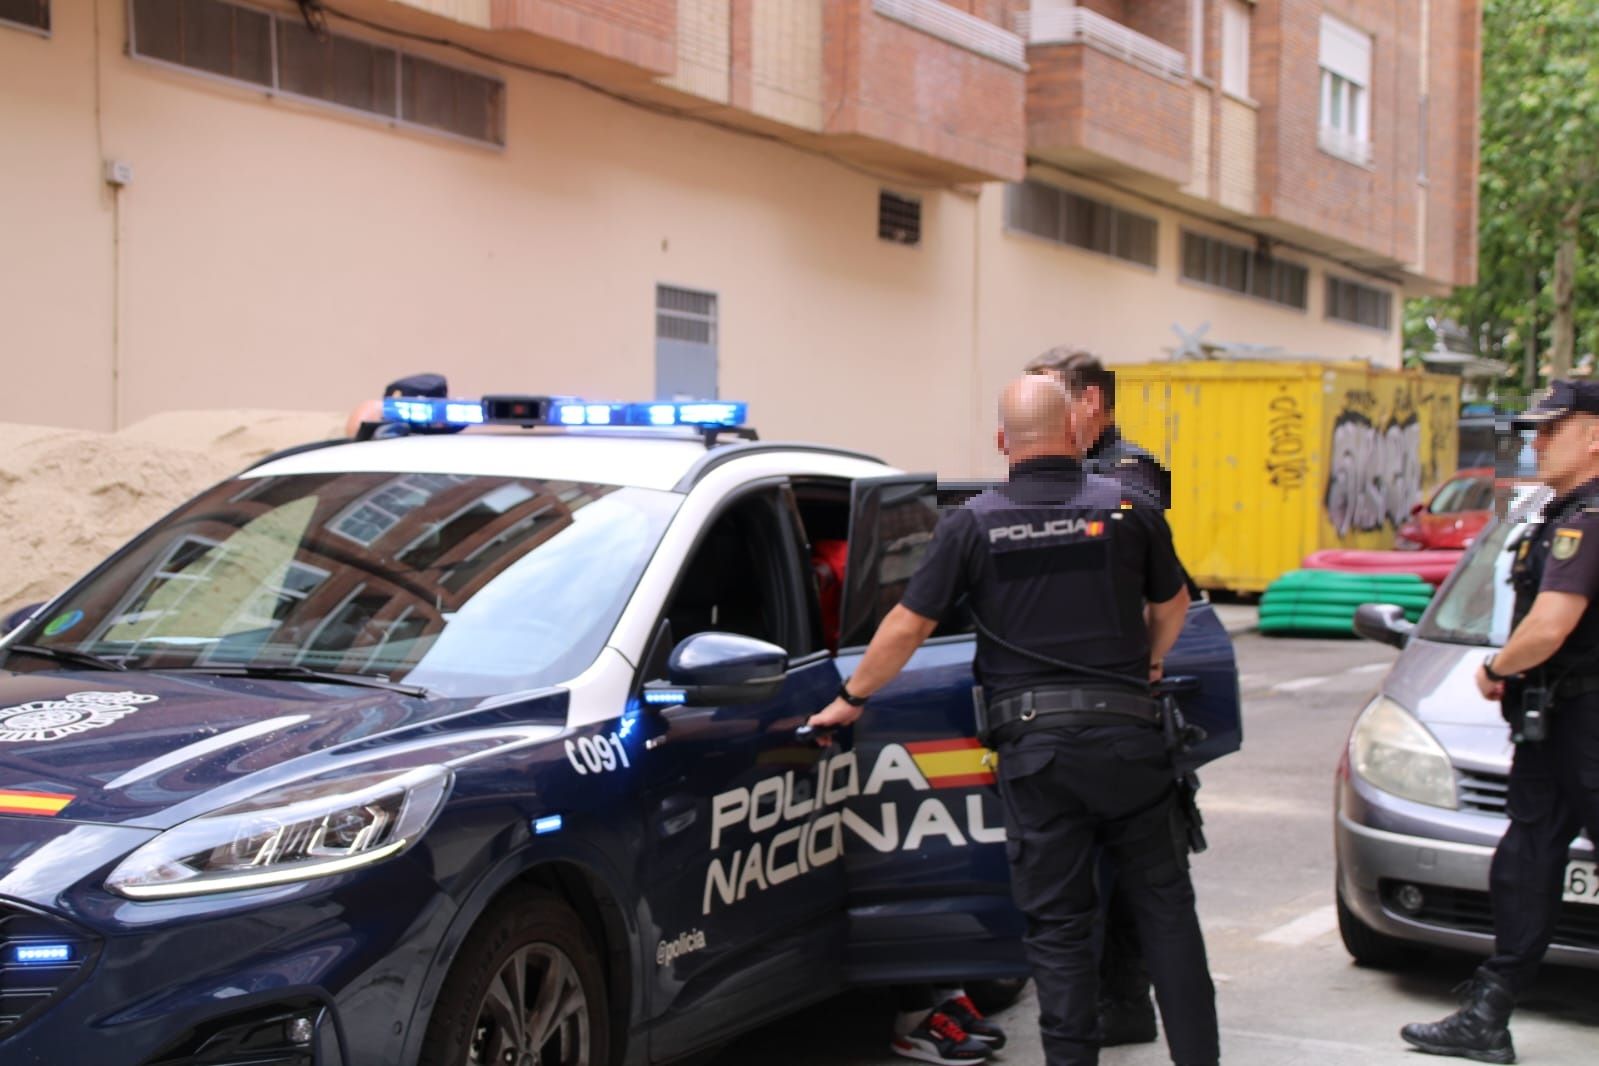 Policia Nacional inspeccionando una vivienda en la calle Perú (5)